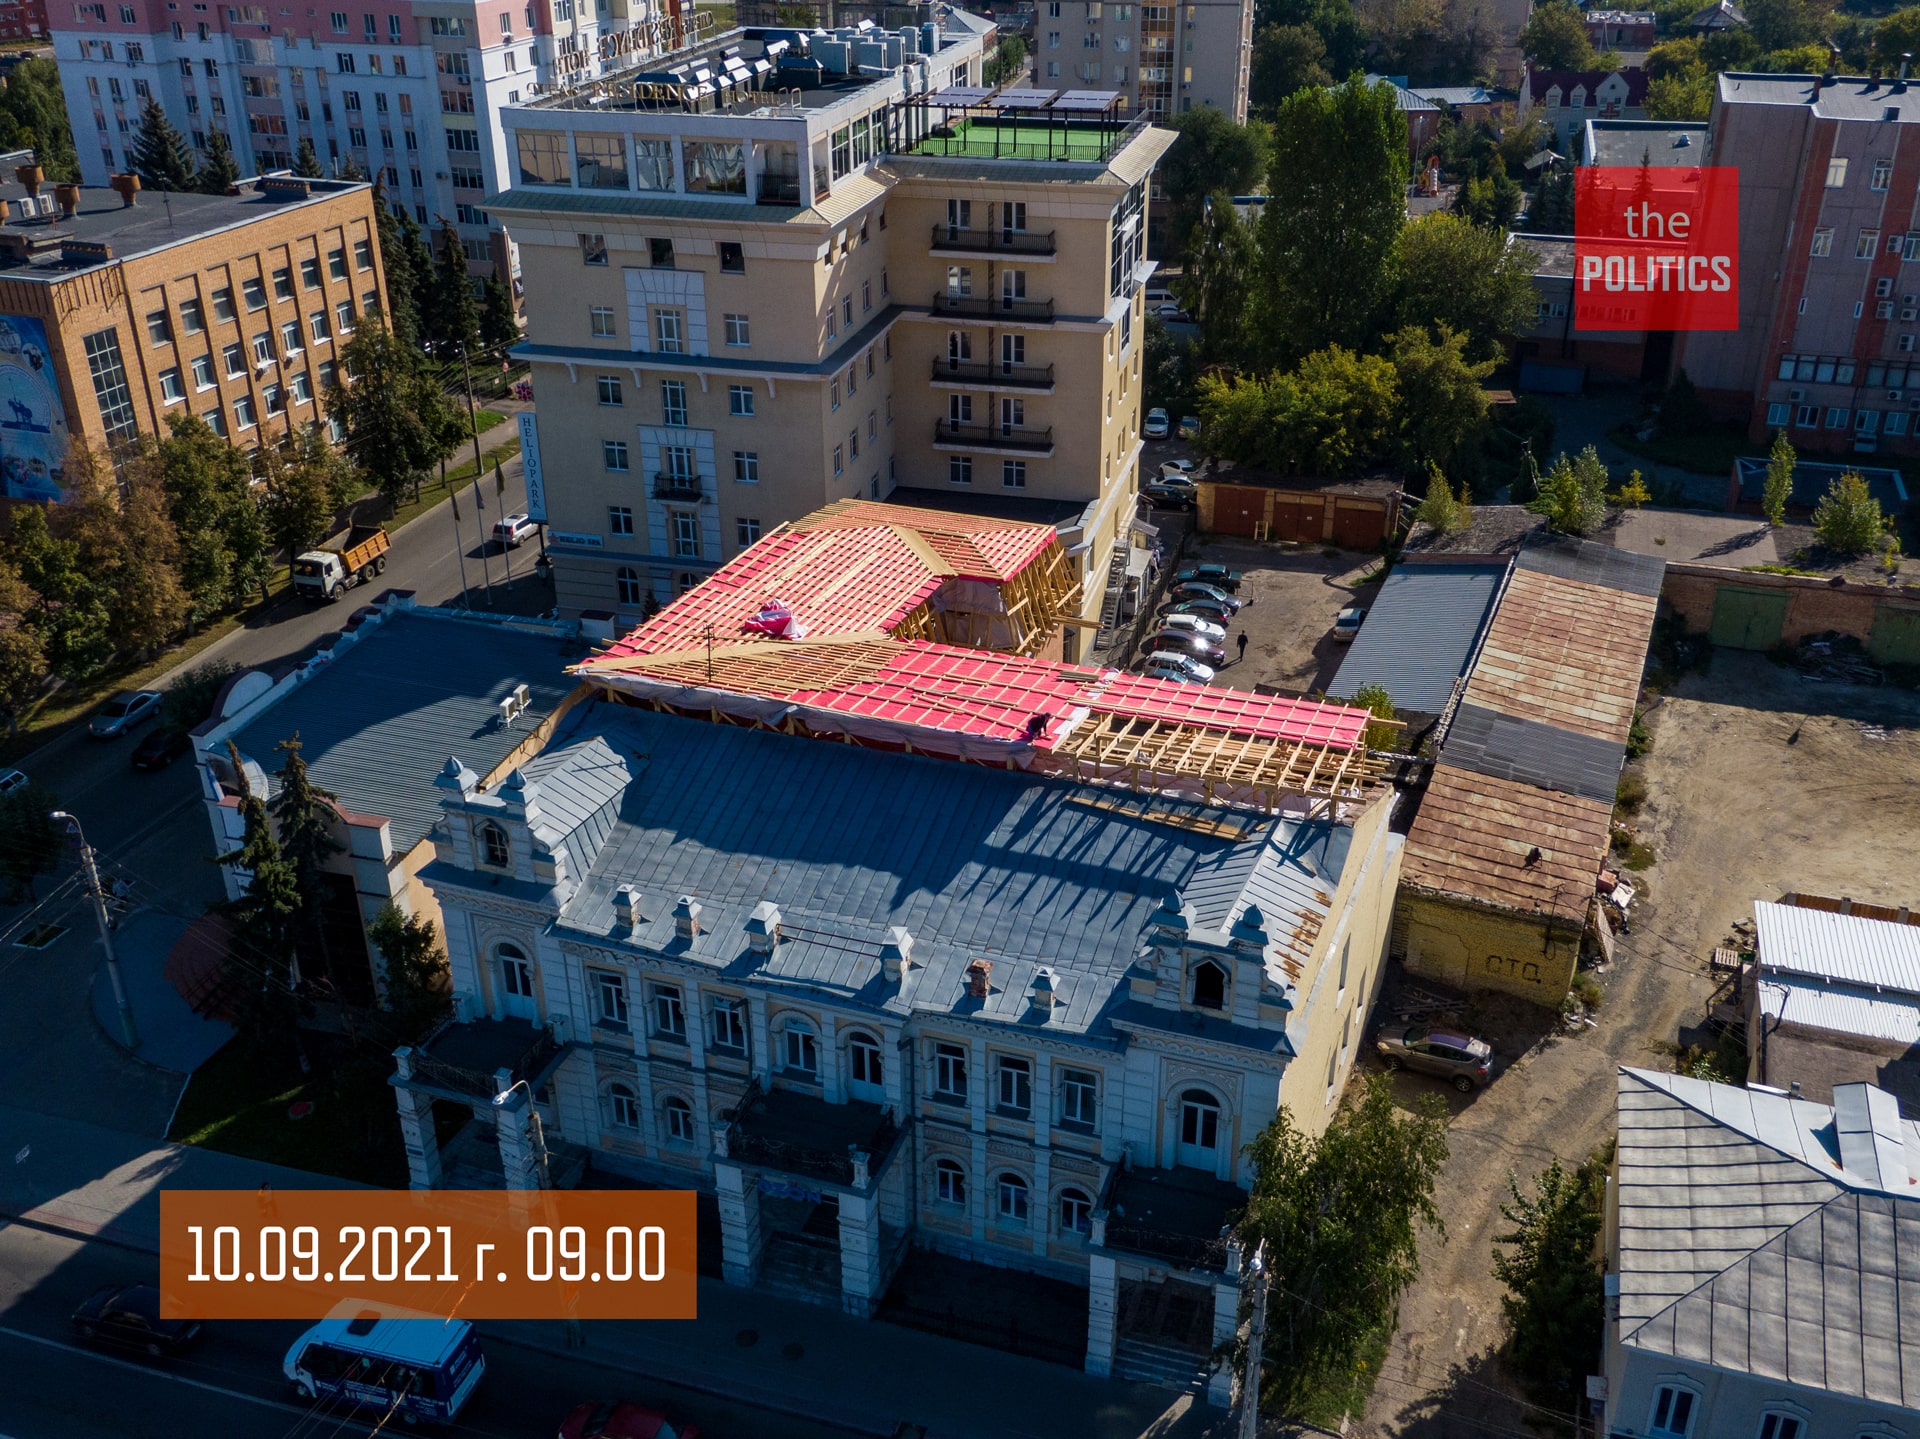 Ремонт исторического здания на улице Кирова 49 в Пензе может стать скандальным